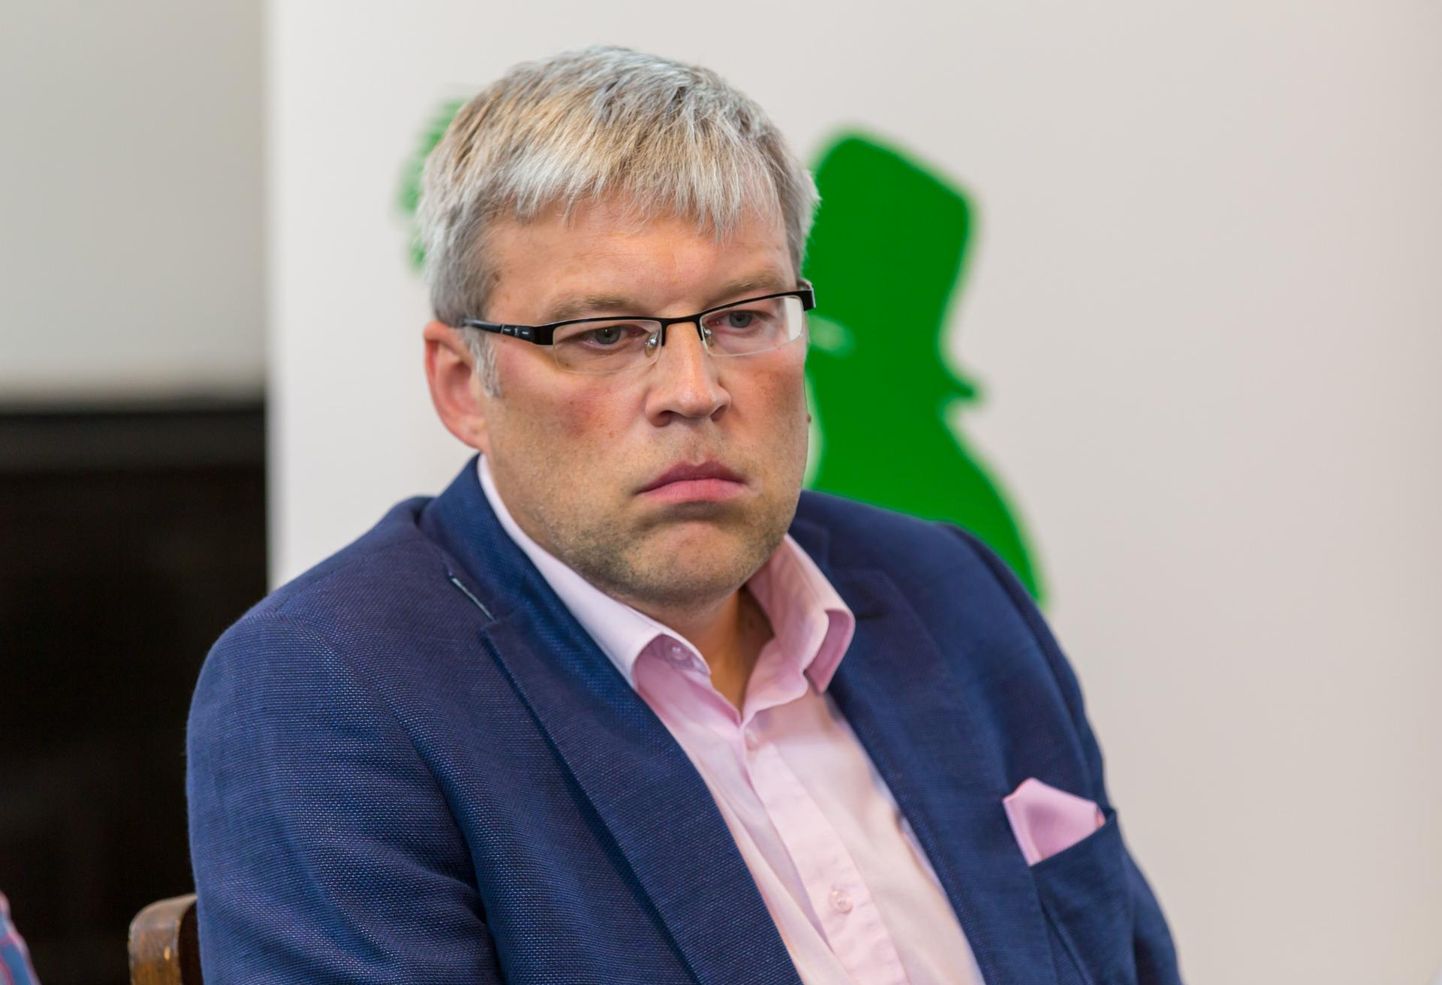 Maanteeameti eksamiosakonna juhataja Tarmo Vanamõisa rõhutab, et eksam lihtsamaks ei muutu. FOTO: Madis Sinivee / Pärnu Postimees